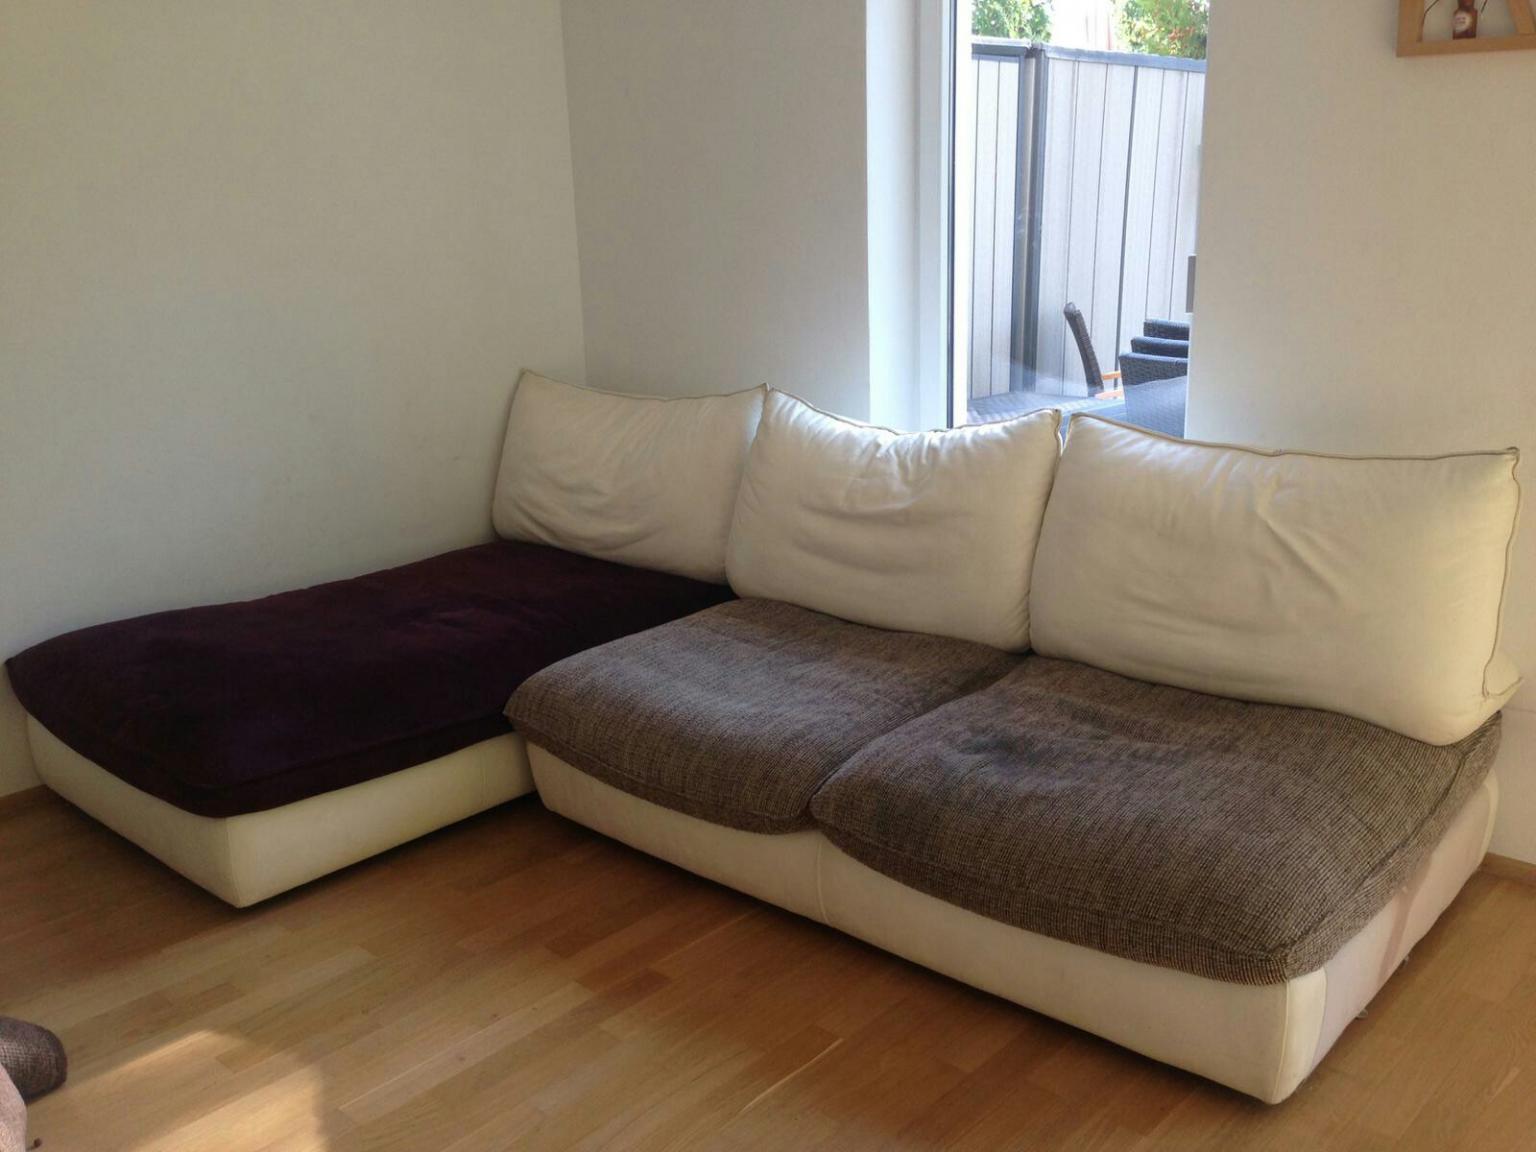 Couch Ledersofa Wohnzimmer Gebraucht In 6973 Hochst Fur